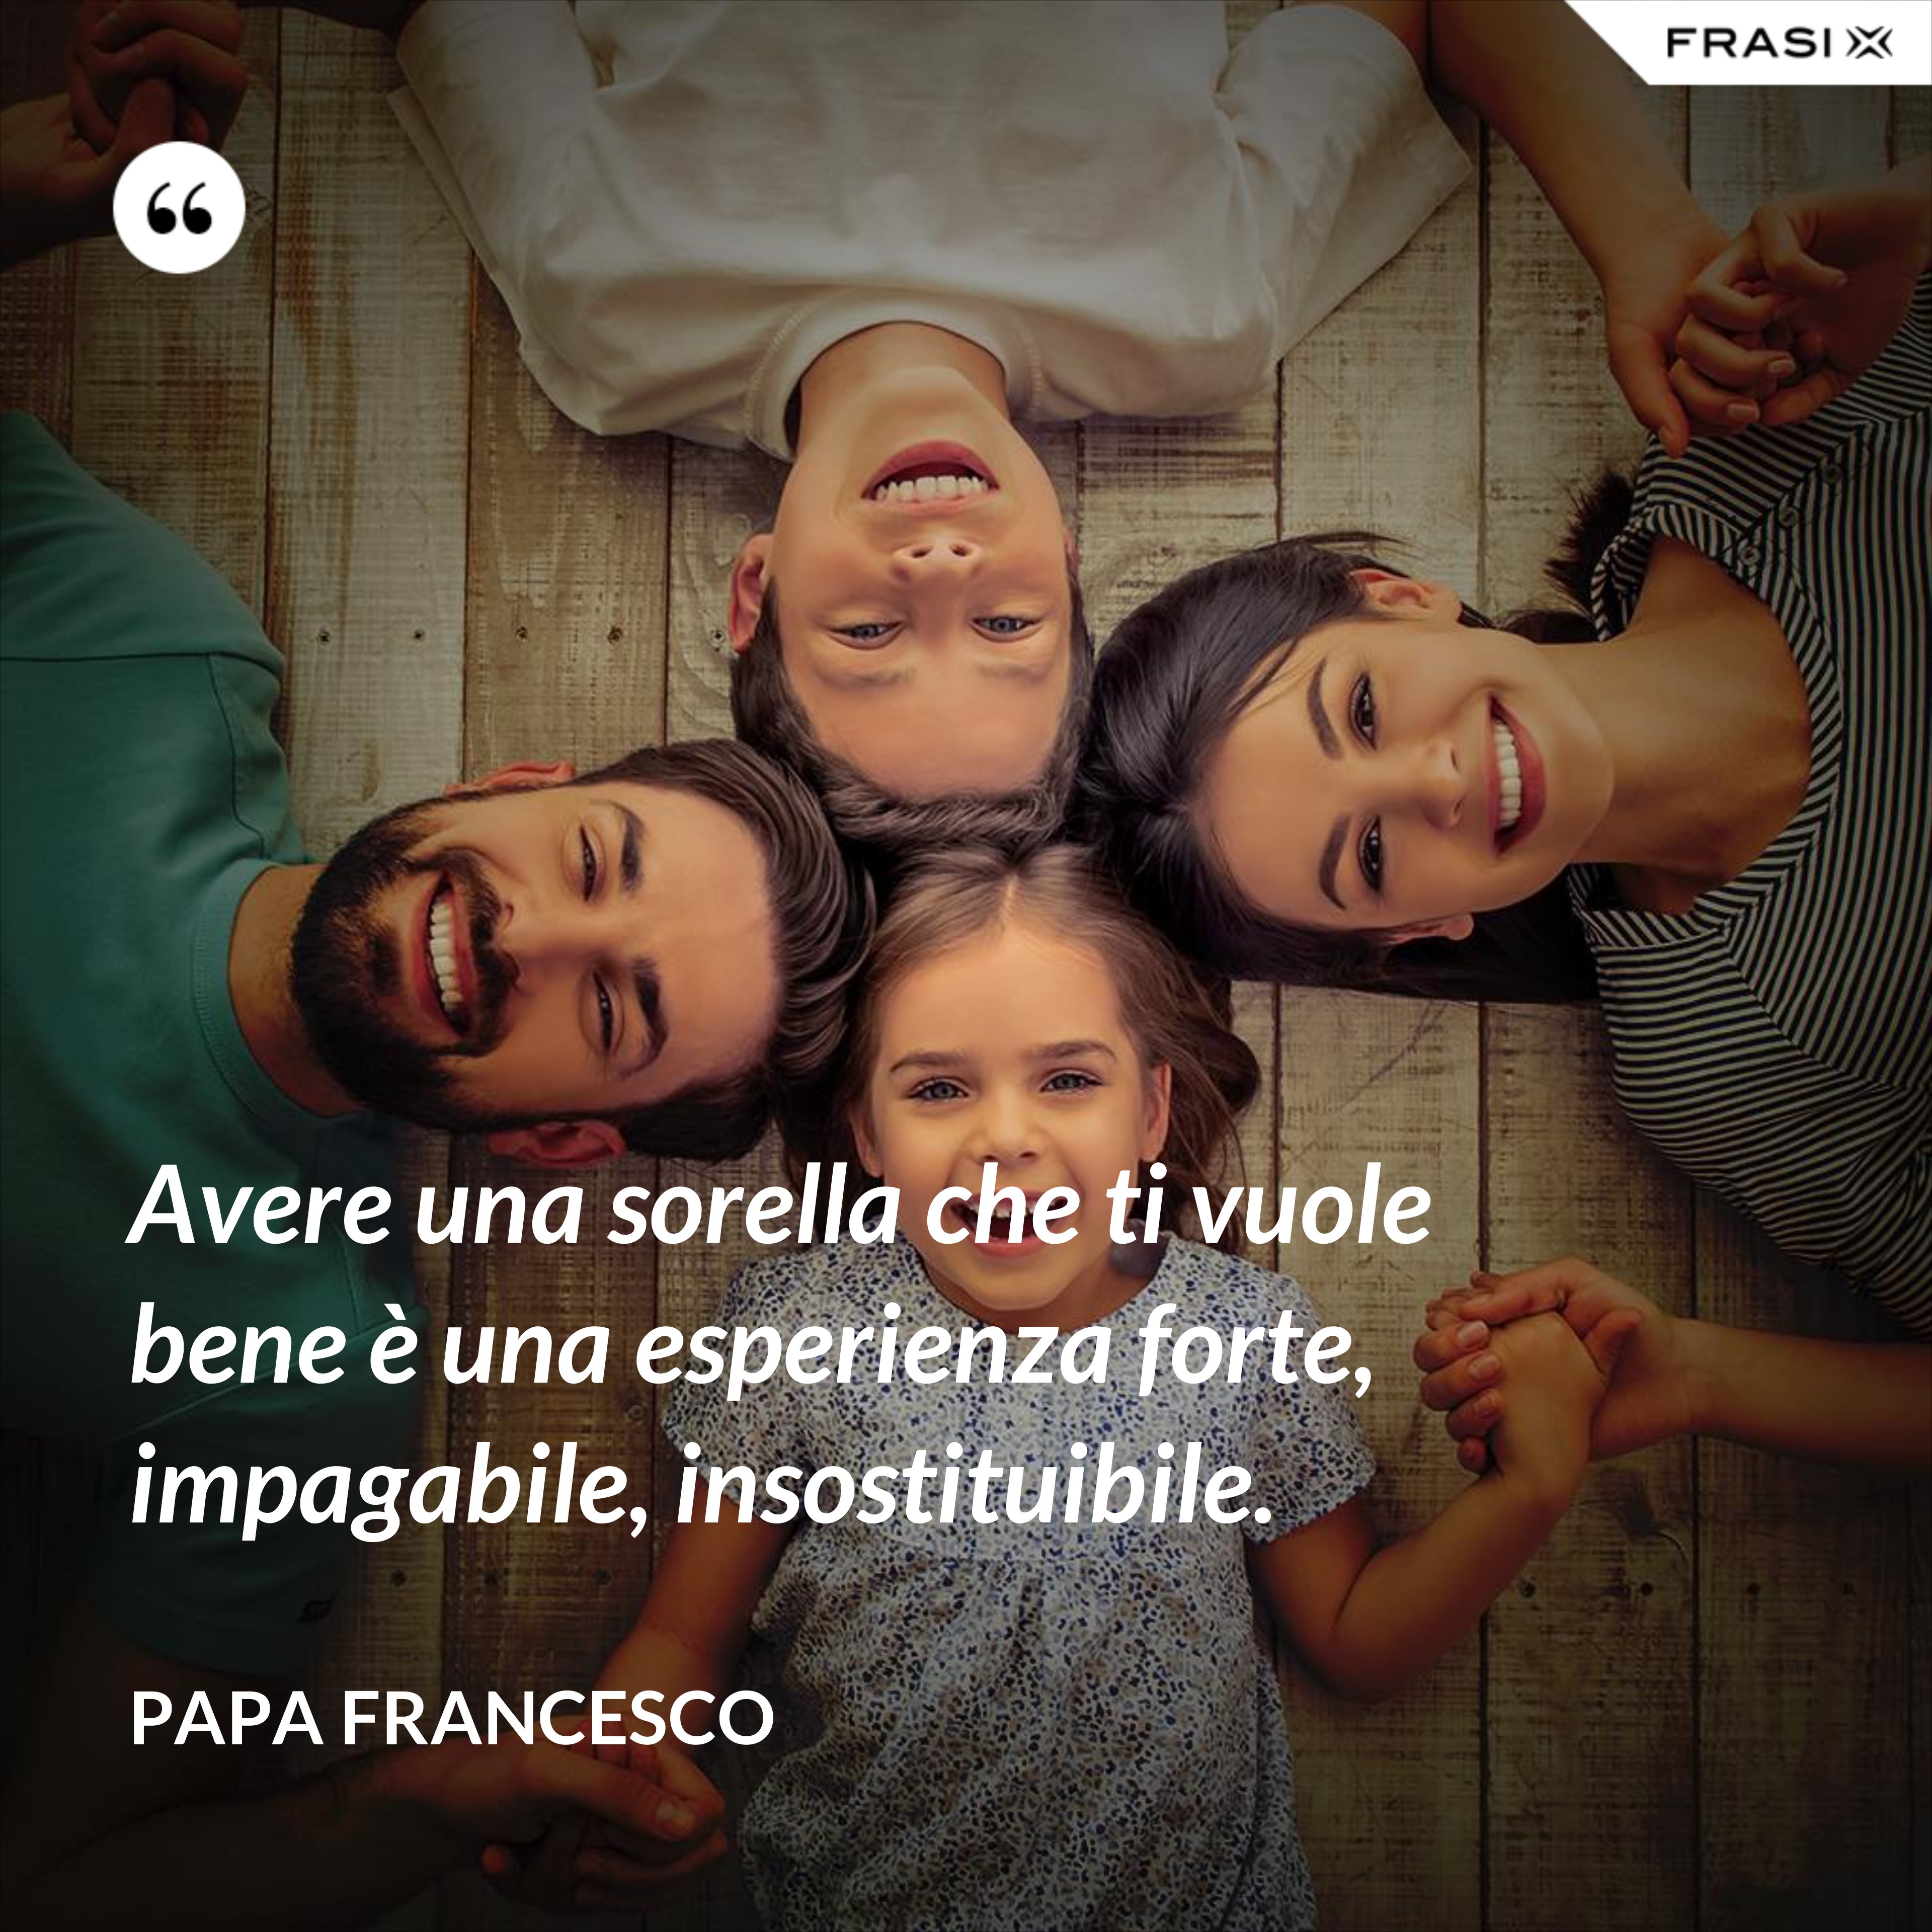 Avere una sorella che ti vuole bene è una esperienza forte, impagabile, insostituibile. - Papa Francesco